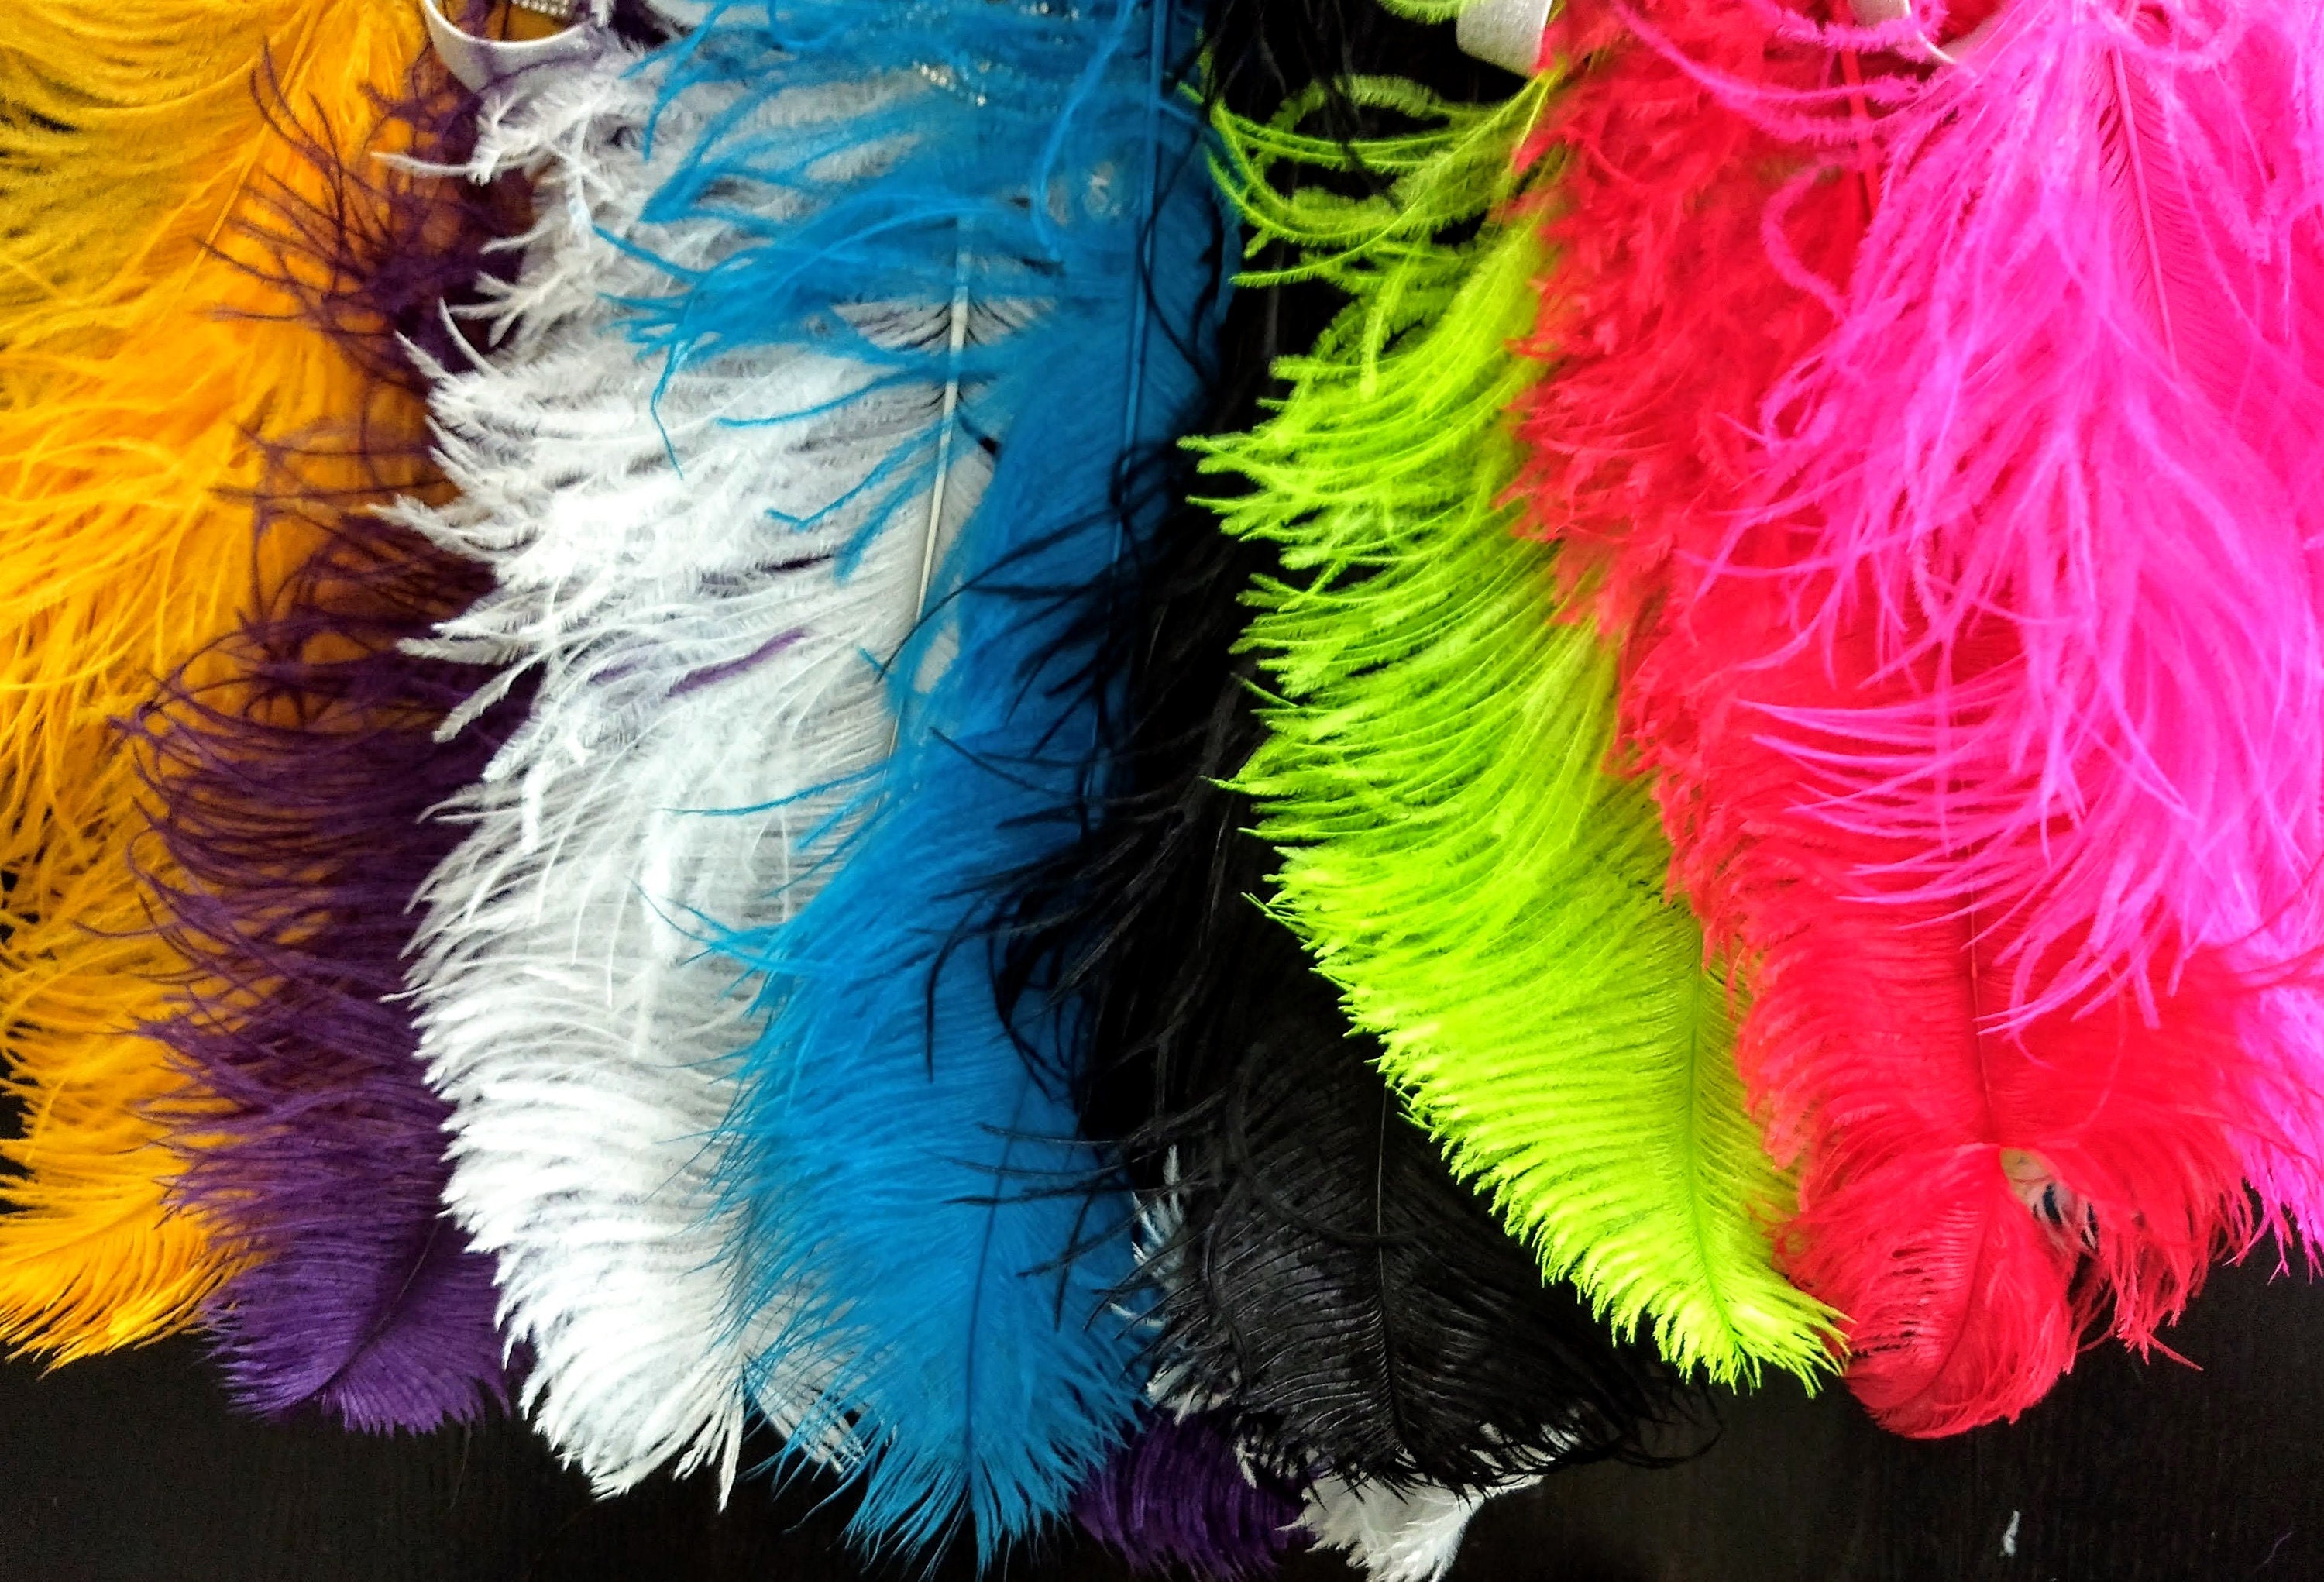 Coiffe de carnaval en plumes d'autruche Prime Showgirl Rainbow Pride -   France